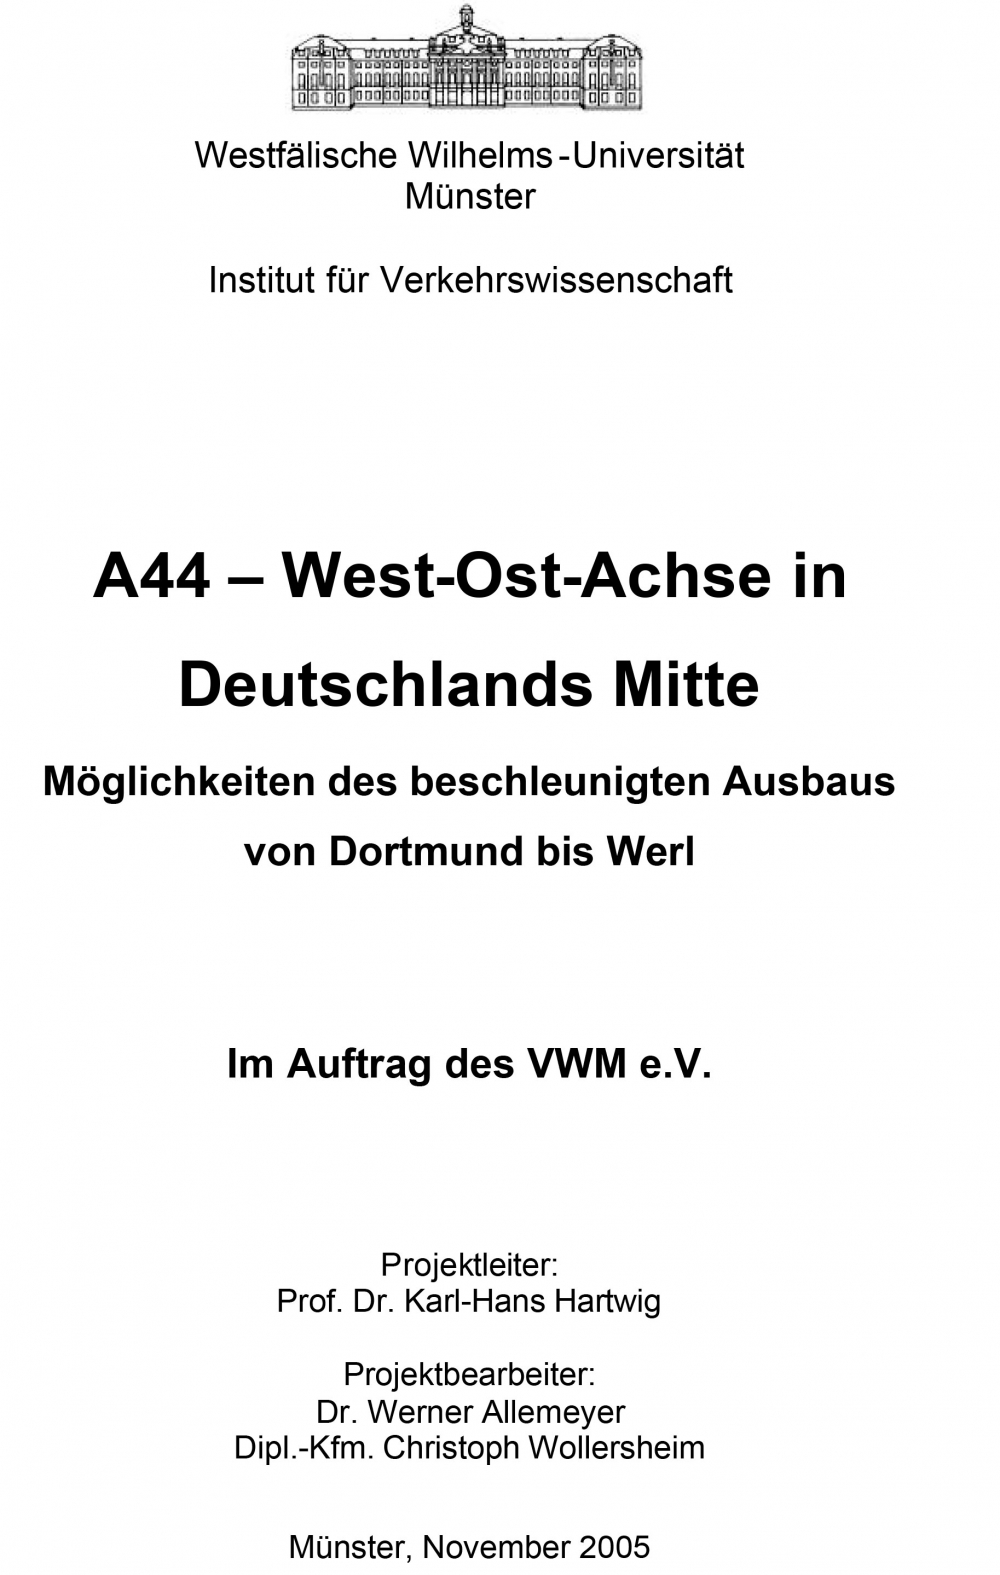 A 44 - West-Ost-Achse in Deutschlands Mitte